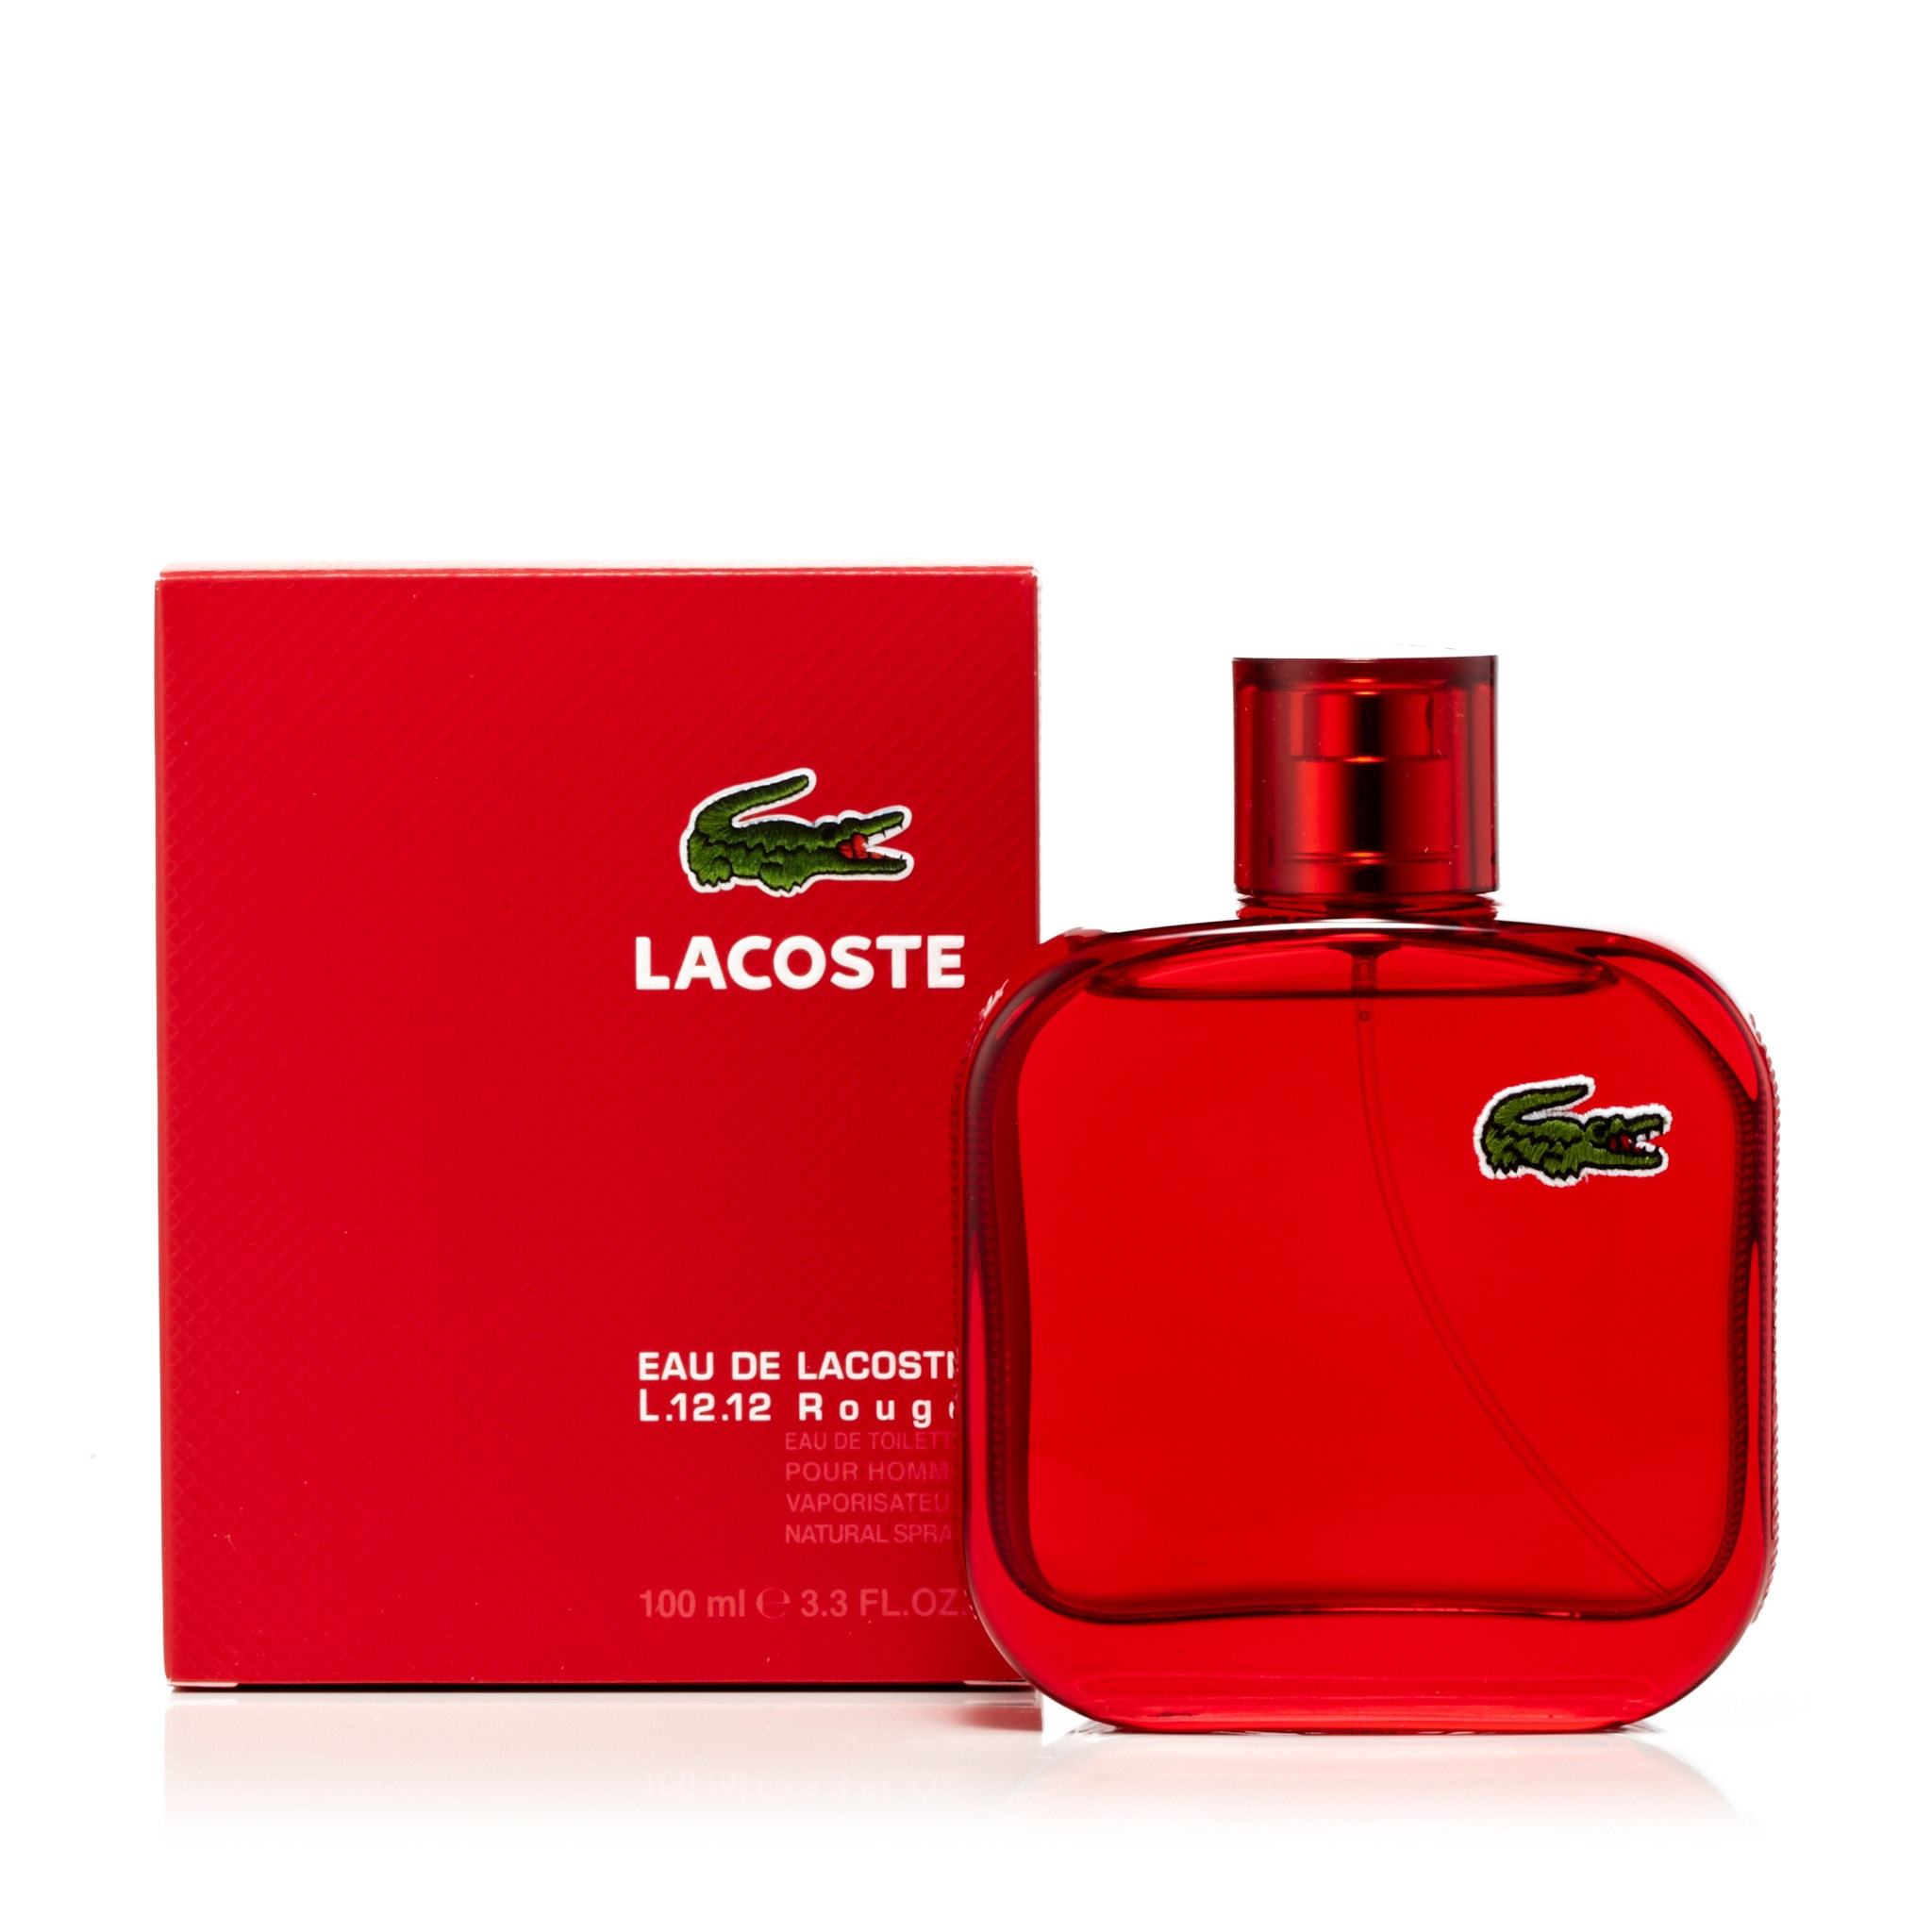 L.12.12 Rouge EDT for Men by Fragrance